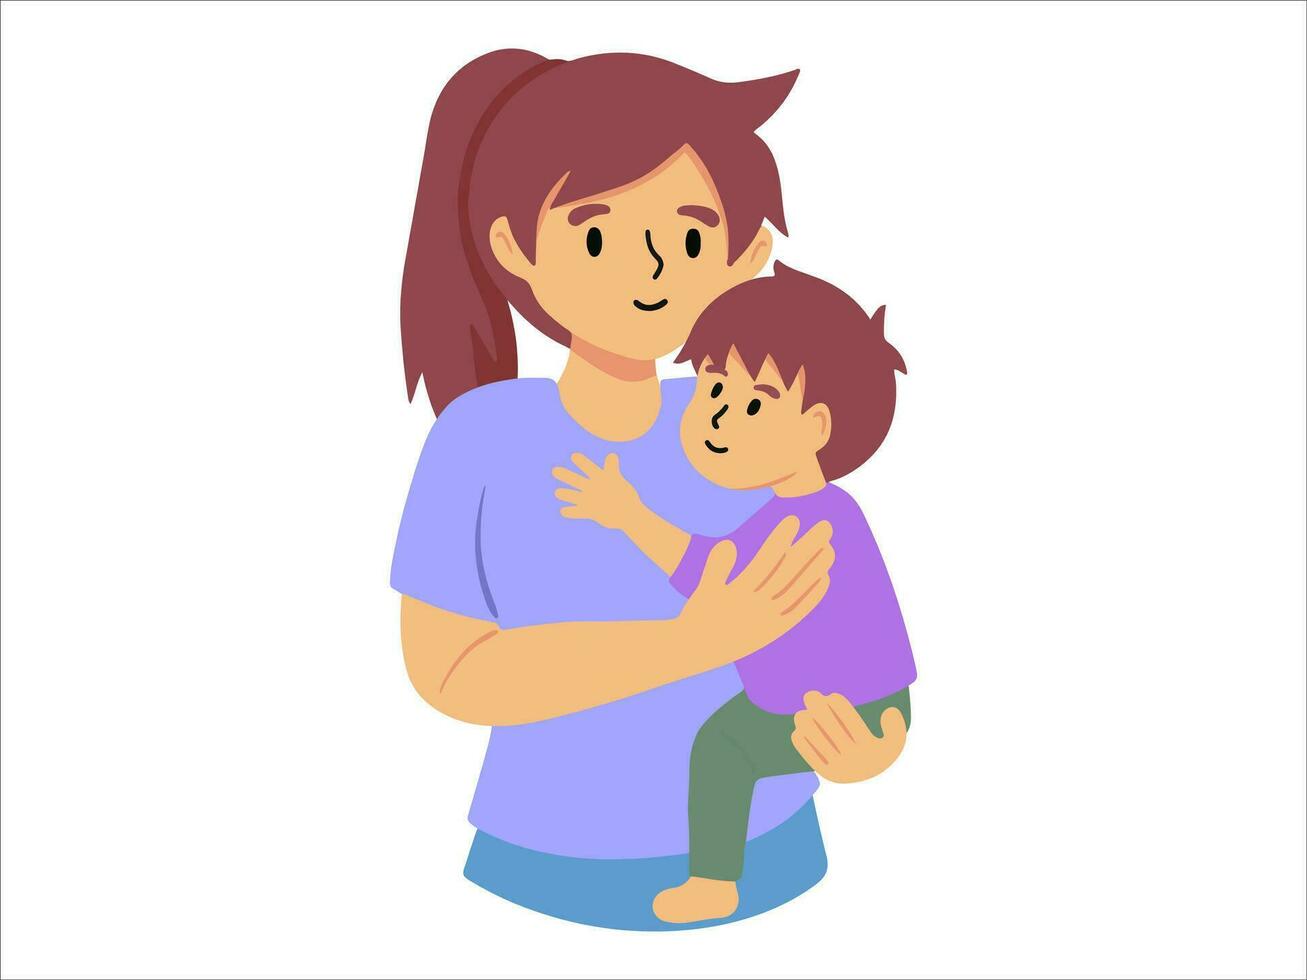 mam Holding baby of mensen karakter illustratie vector